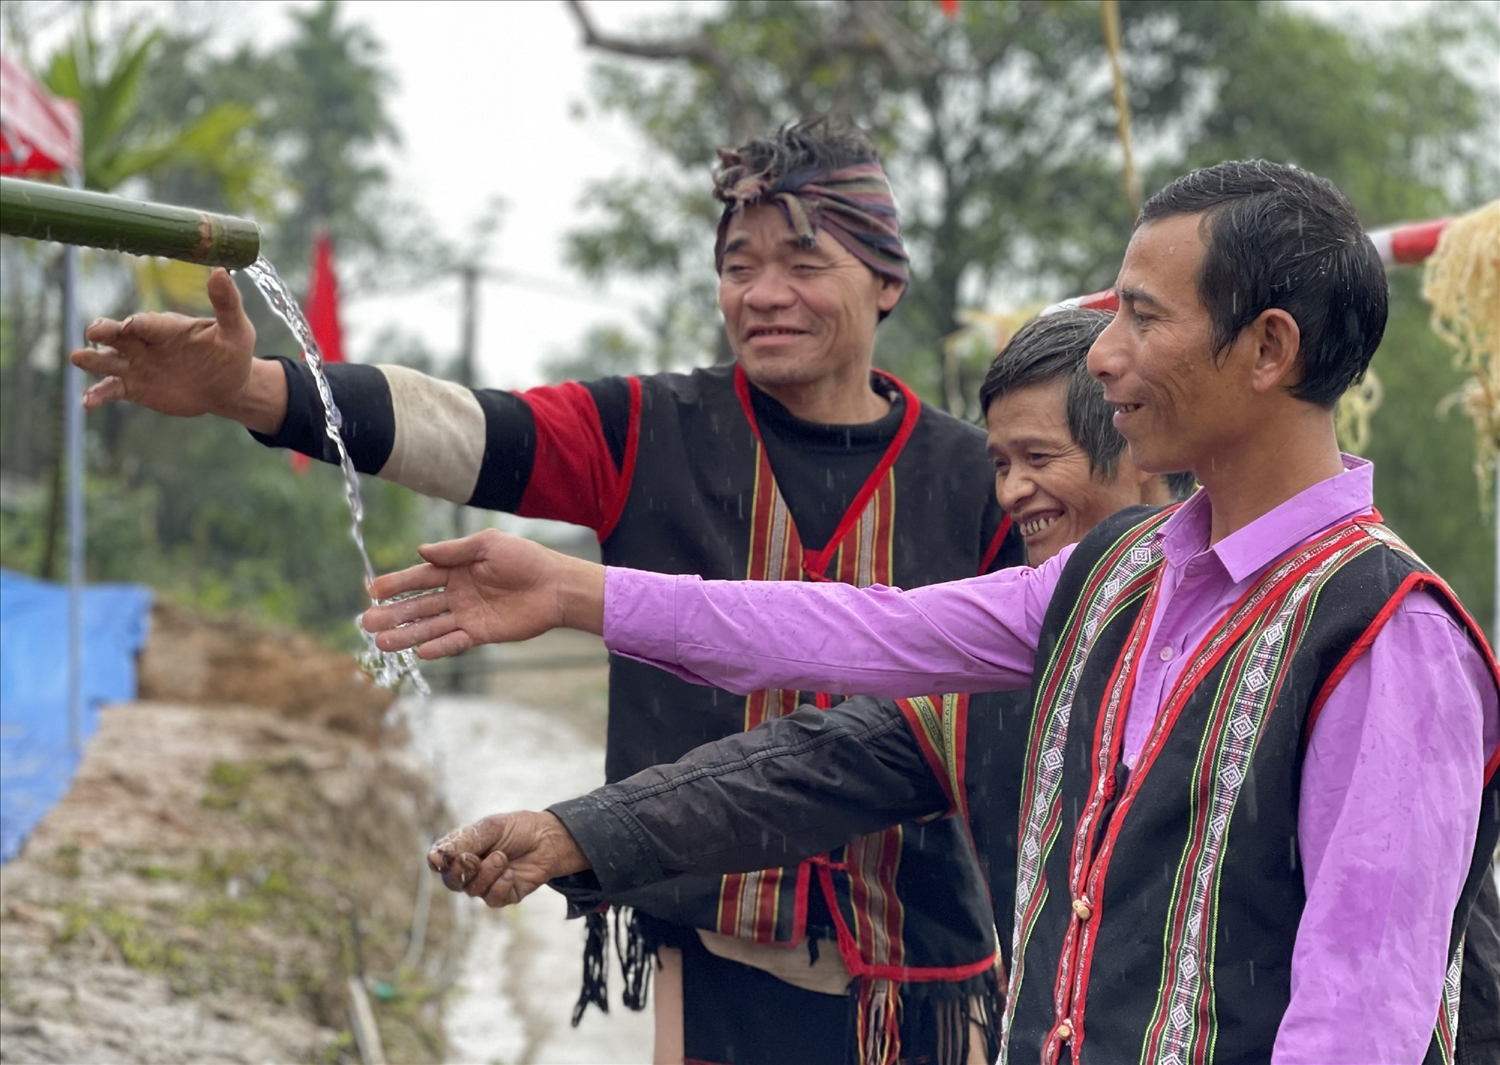 Tỉnh Quảng Nam đang chú trọng phát triển du lịch sinh thái, hướng du khách đến tìm hiểu, trải nghiệm đời sống, các nét truyền thống văn hóa độc đáo của đồng bào các DTTS tại địa phương.